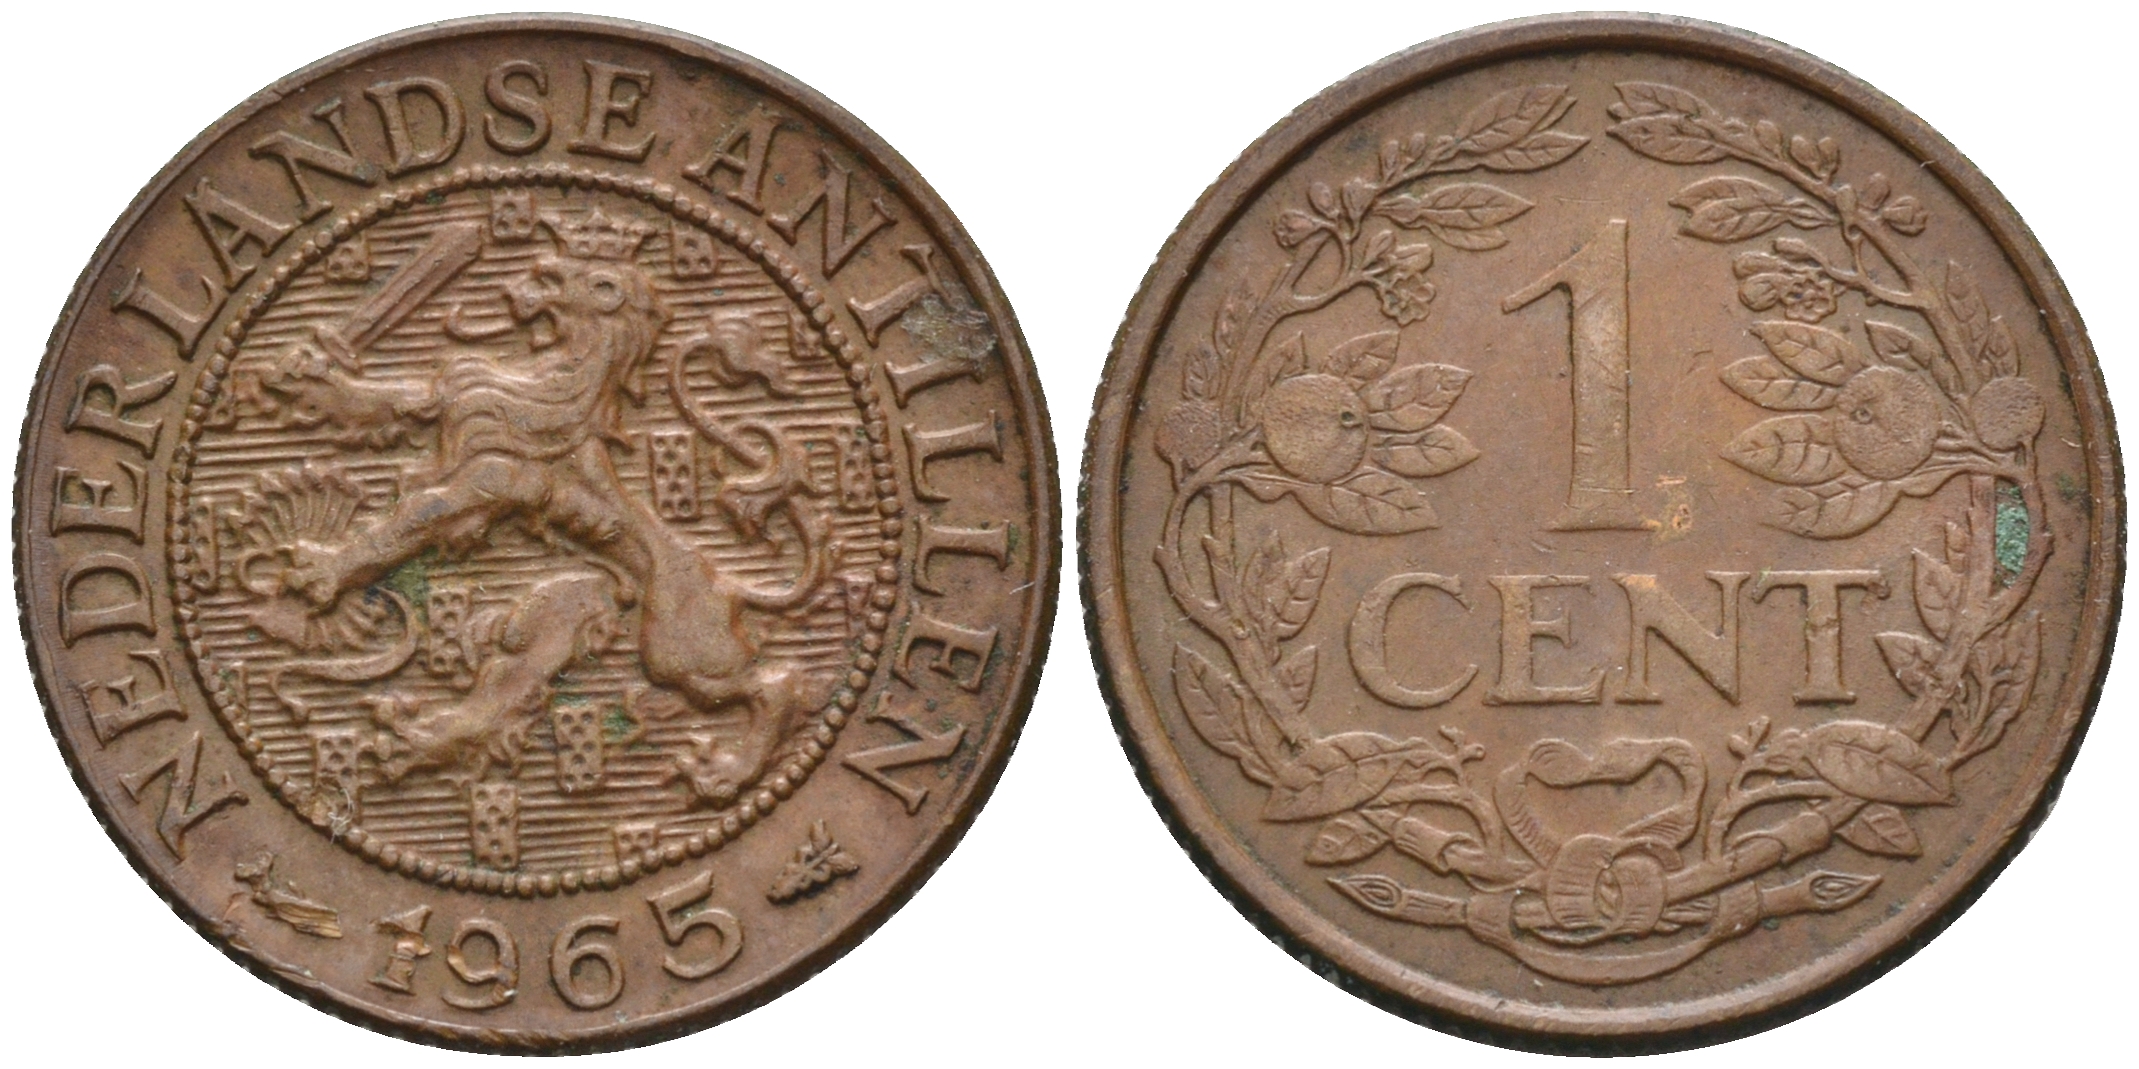 67 в рублях. Нидерландские Антилы монеты. 1 Нидерландский цент. Coin Nederland 1979 2.5. One Cent 1965 сколько стоит.